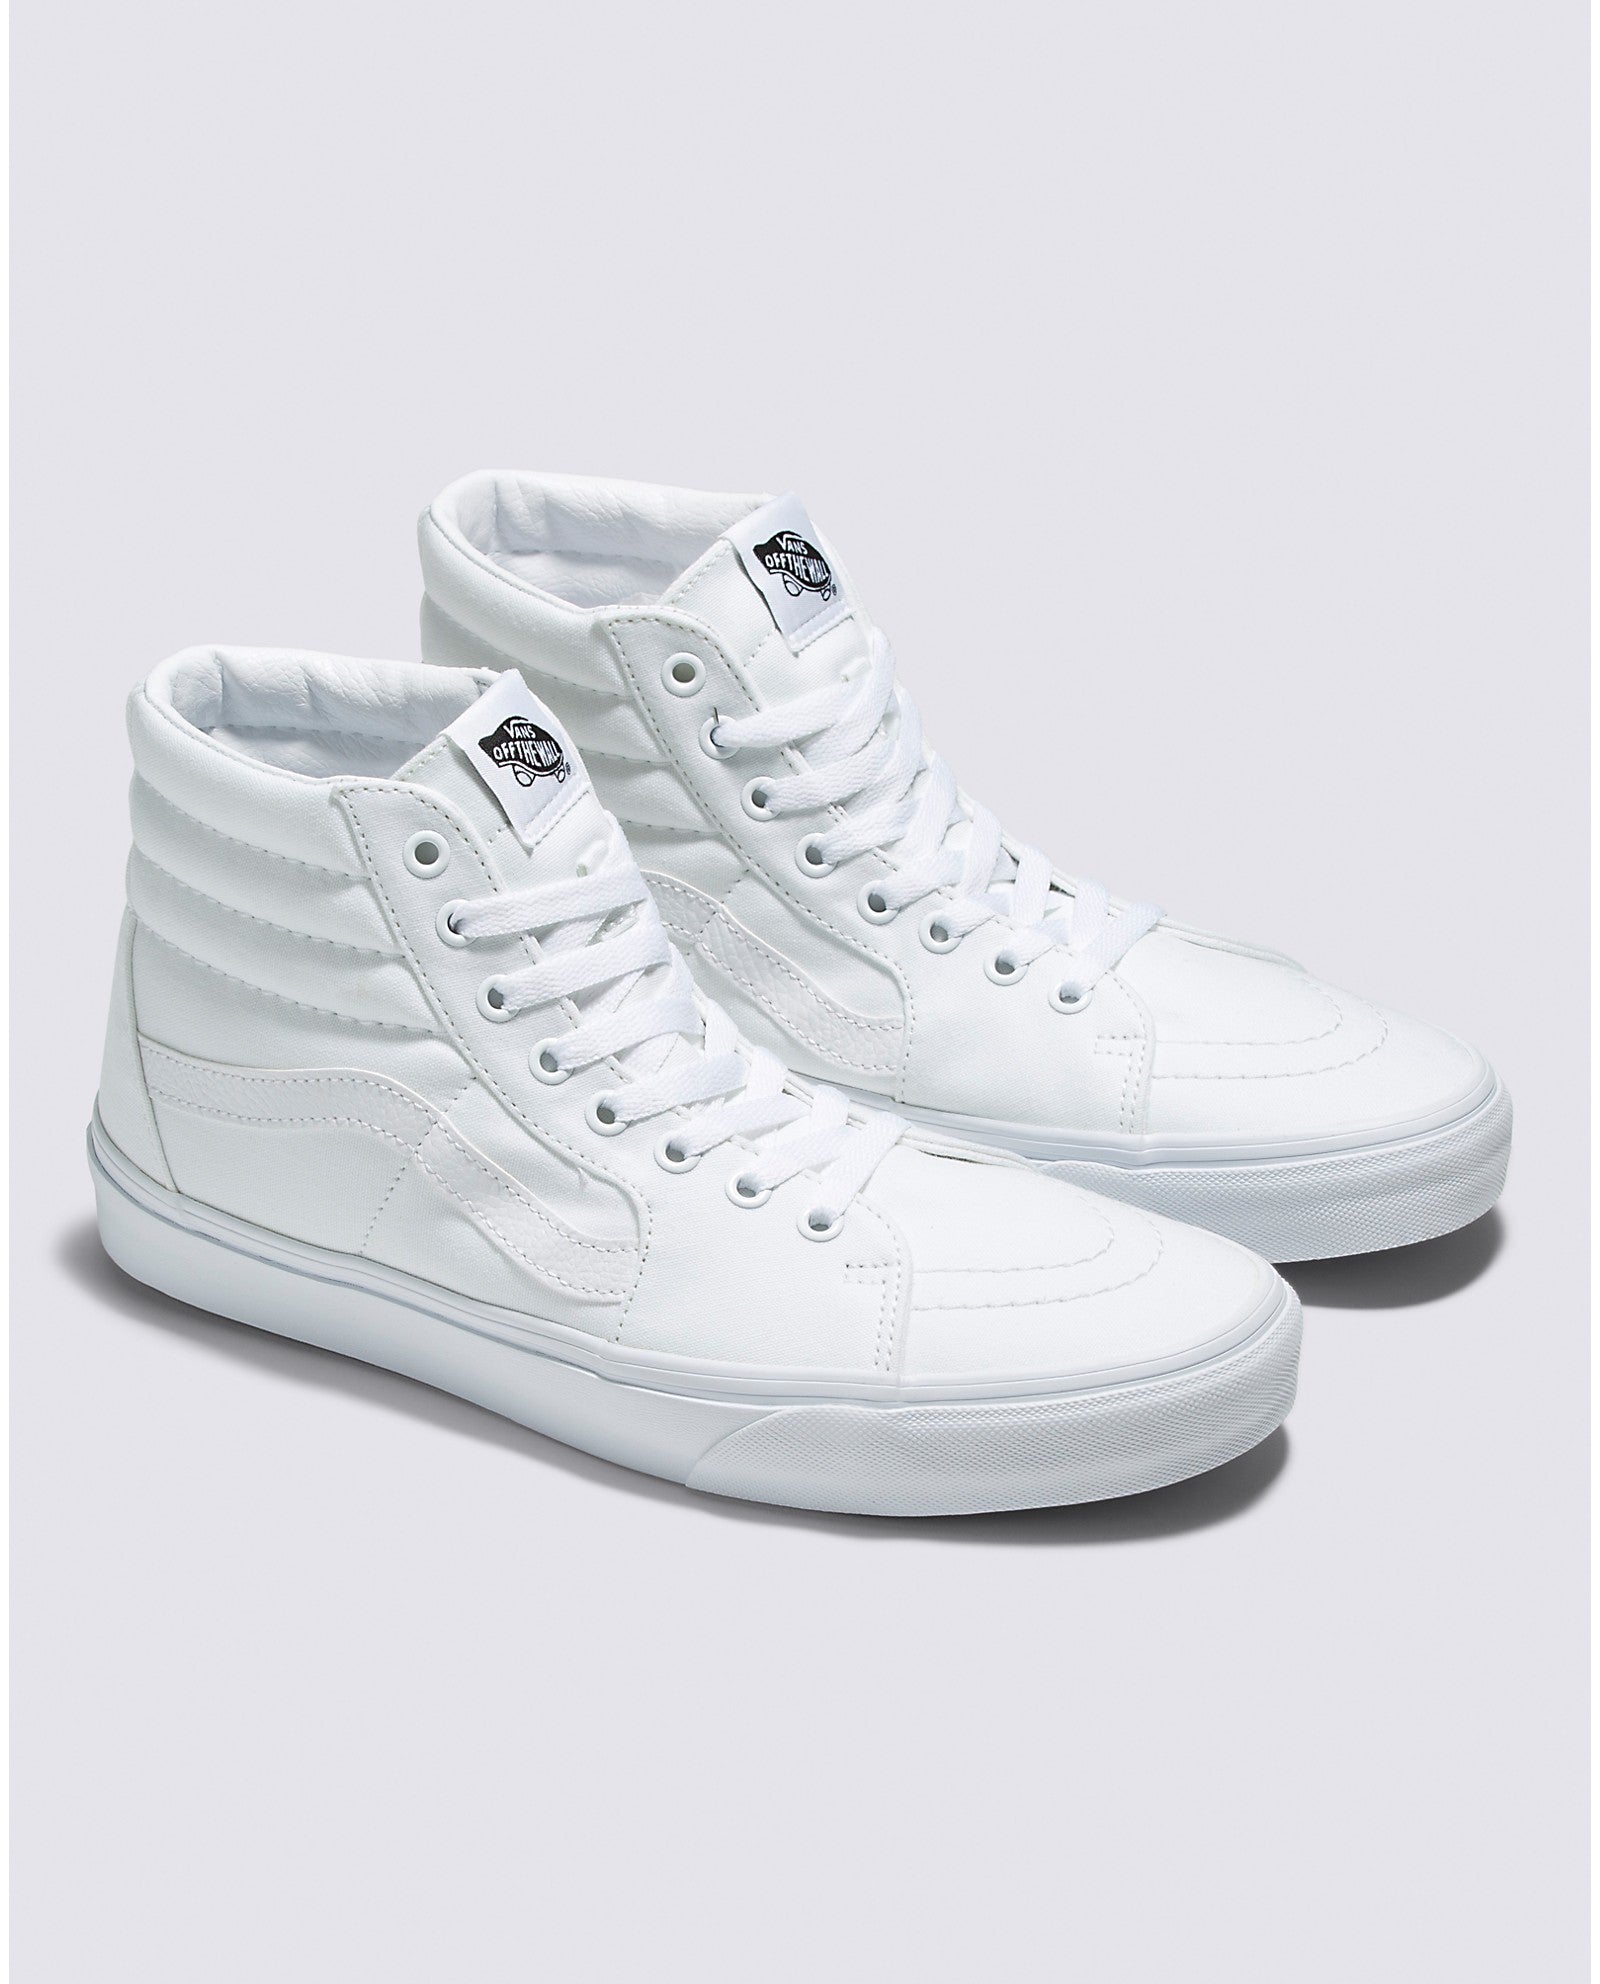 chaussures-comfycush-sk8-hi-true-white-vans-DM2-SHOP-03